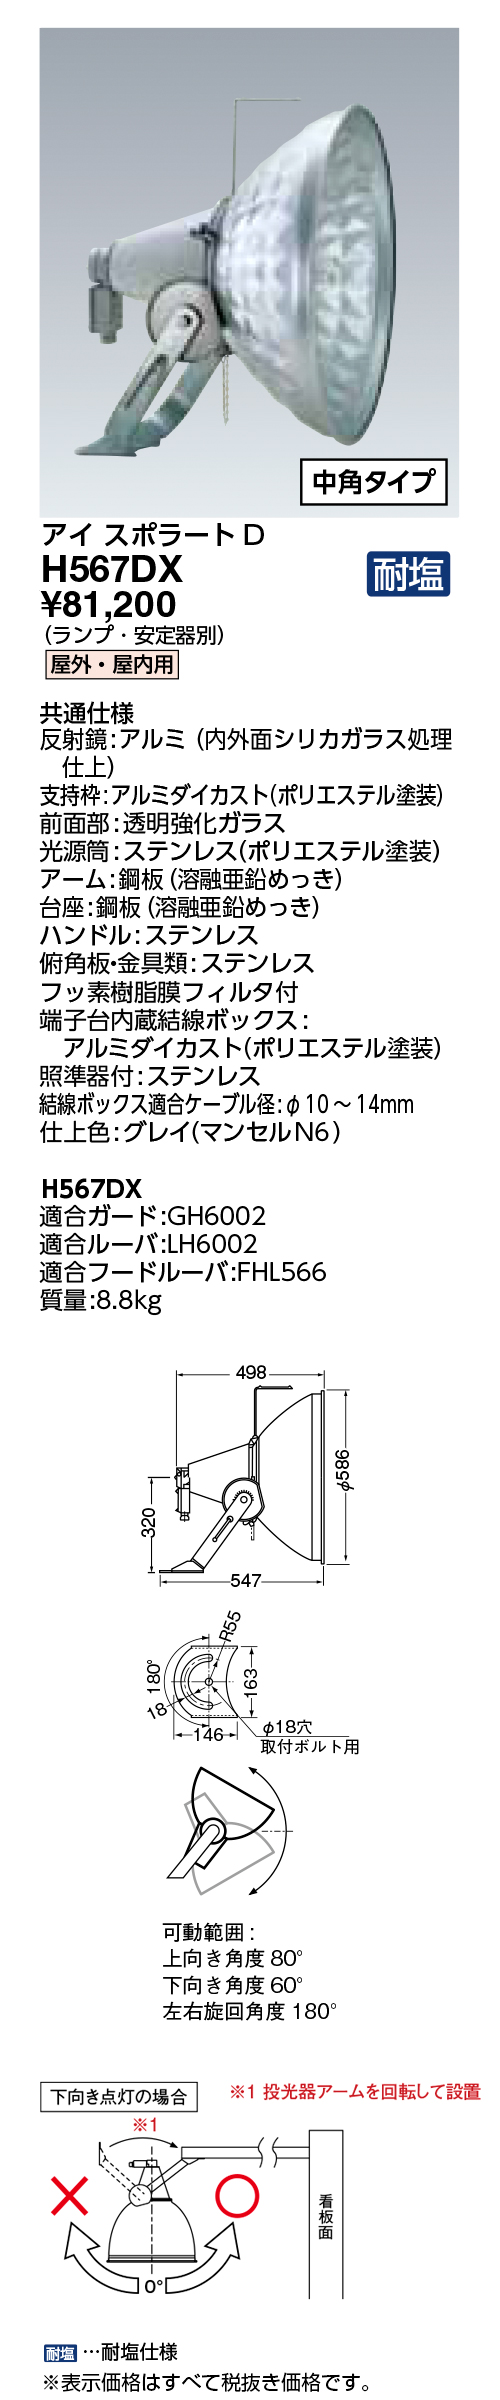 岩崎電気 HID投光器(普及形) H373D - 4